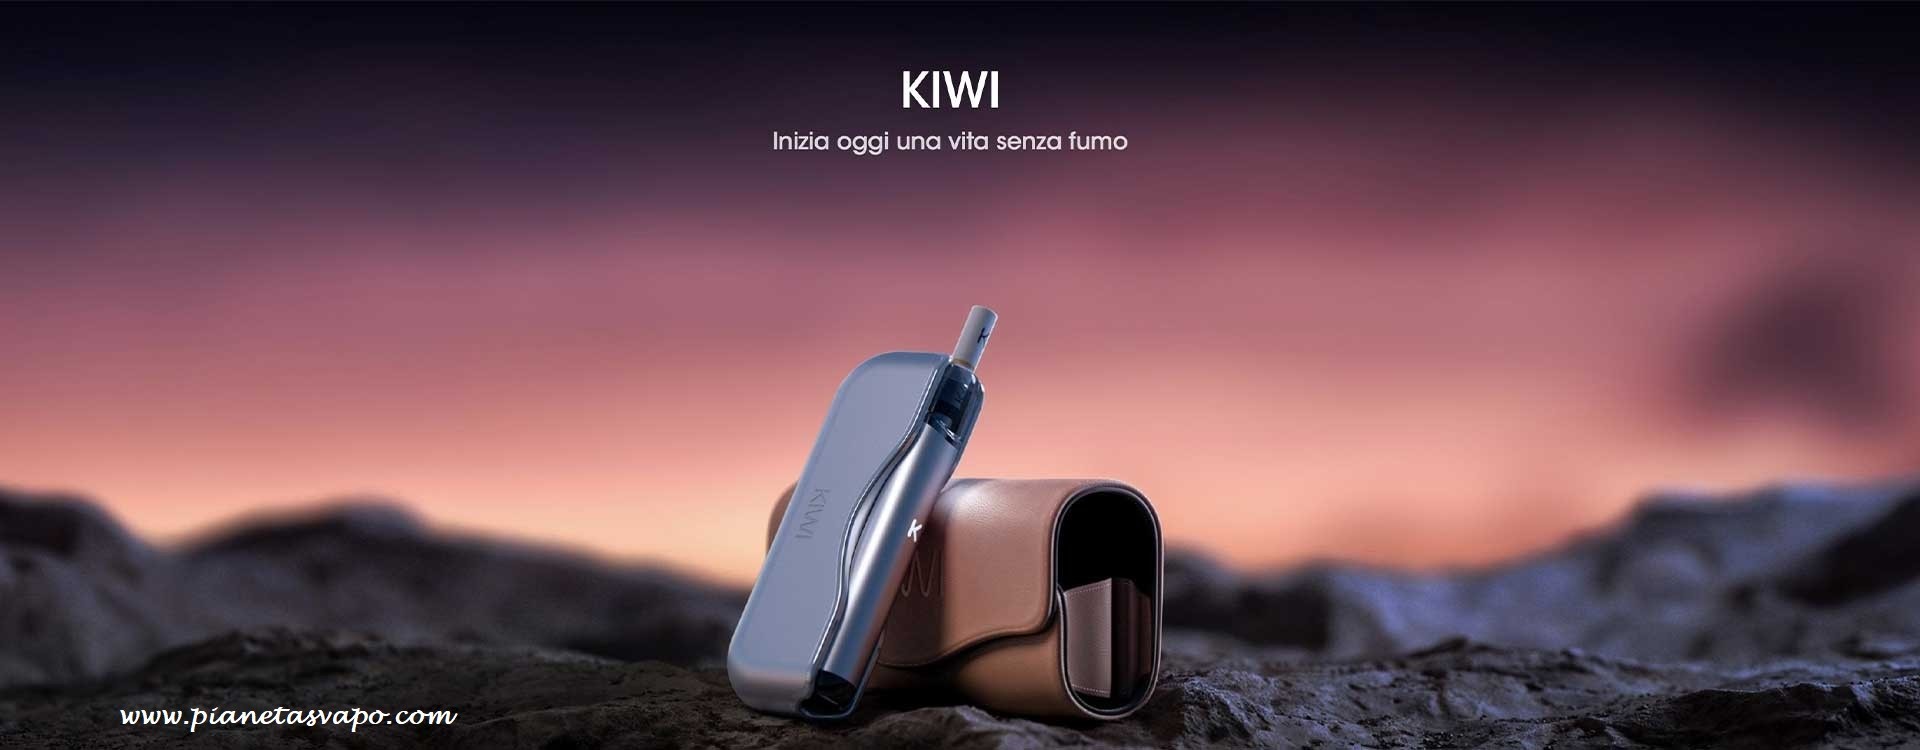 Kiwi starter Kit